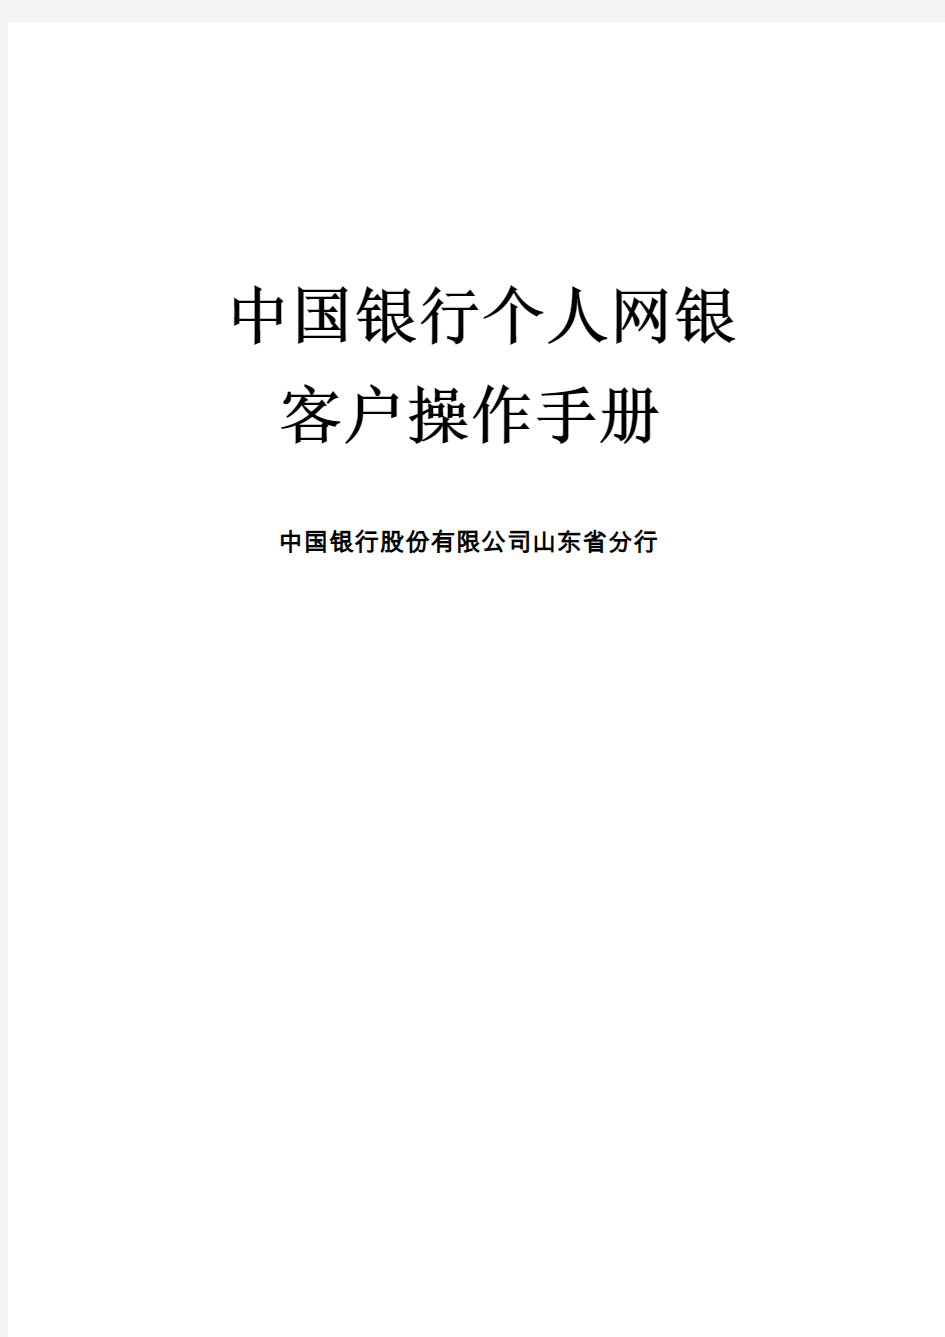 中国银行网上银行用户手册